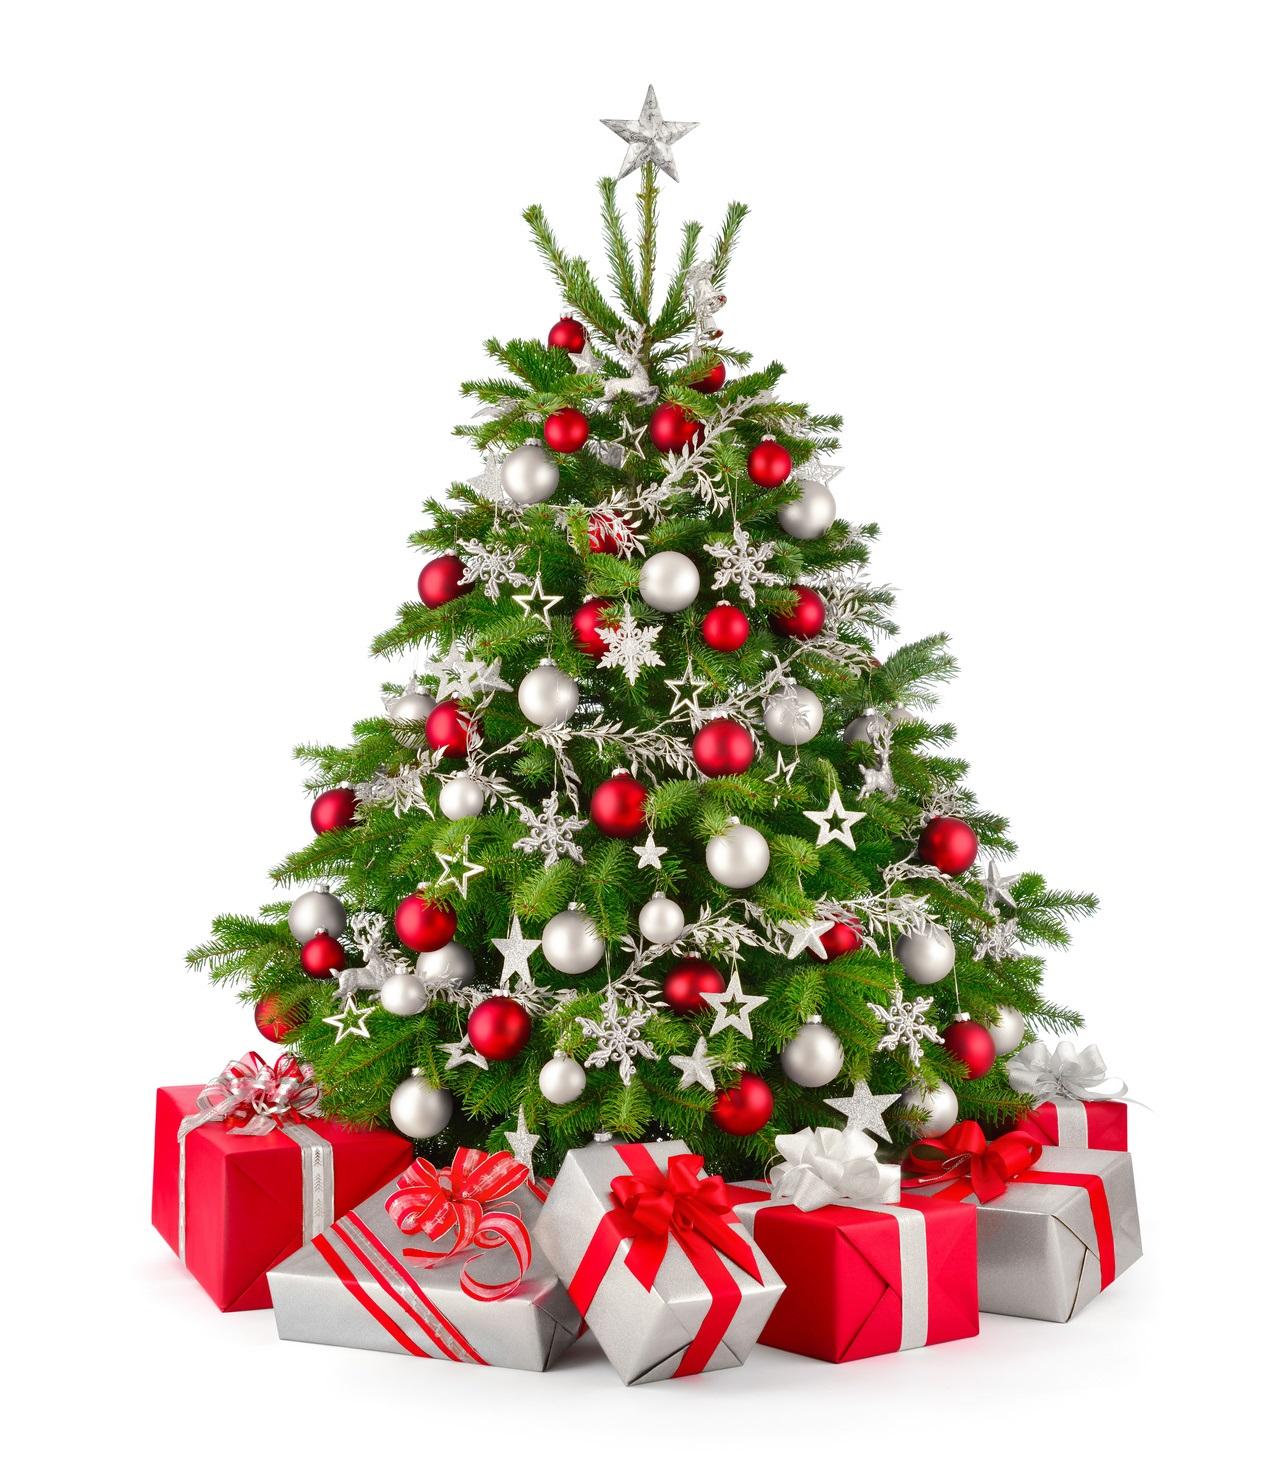 Weihnachtsbaum mit Außergewöhnliche Geschenke